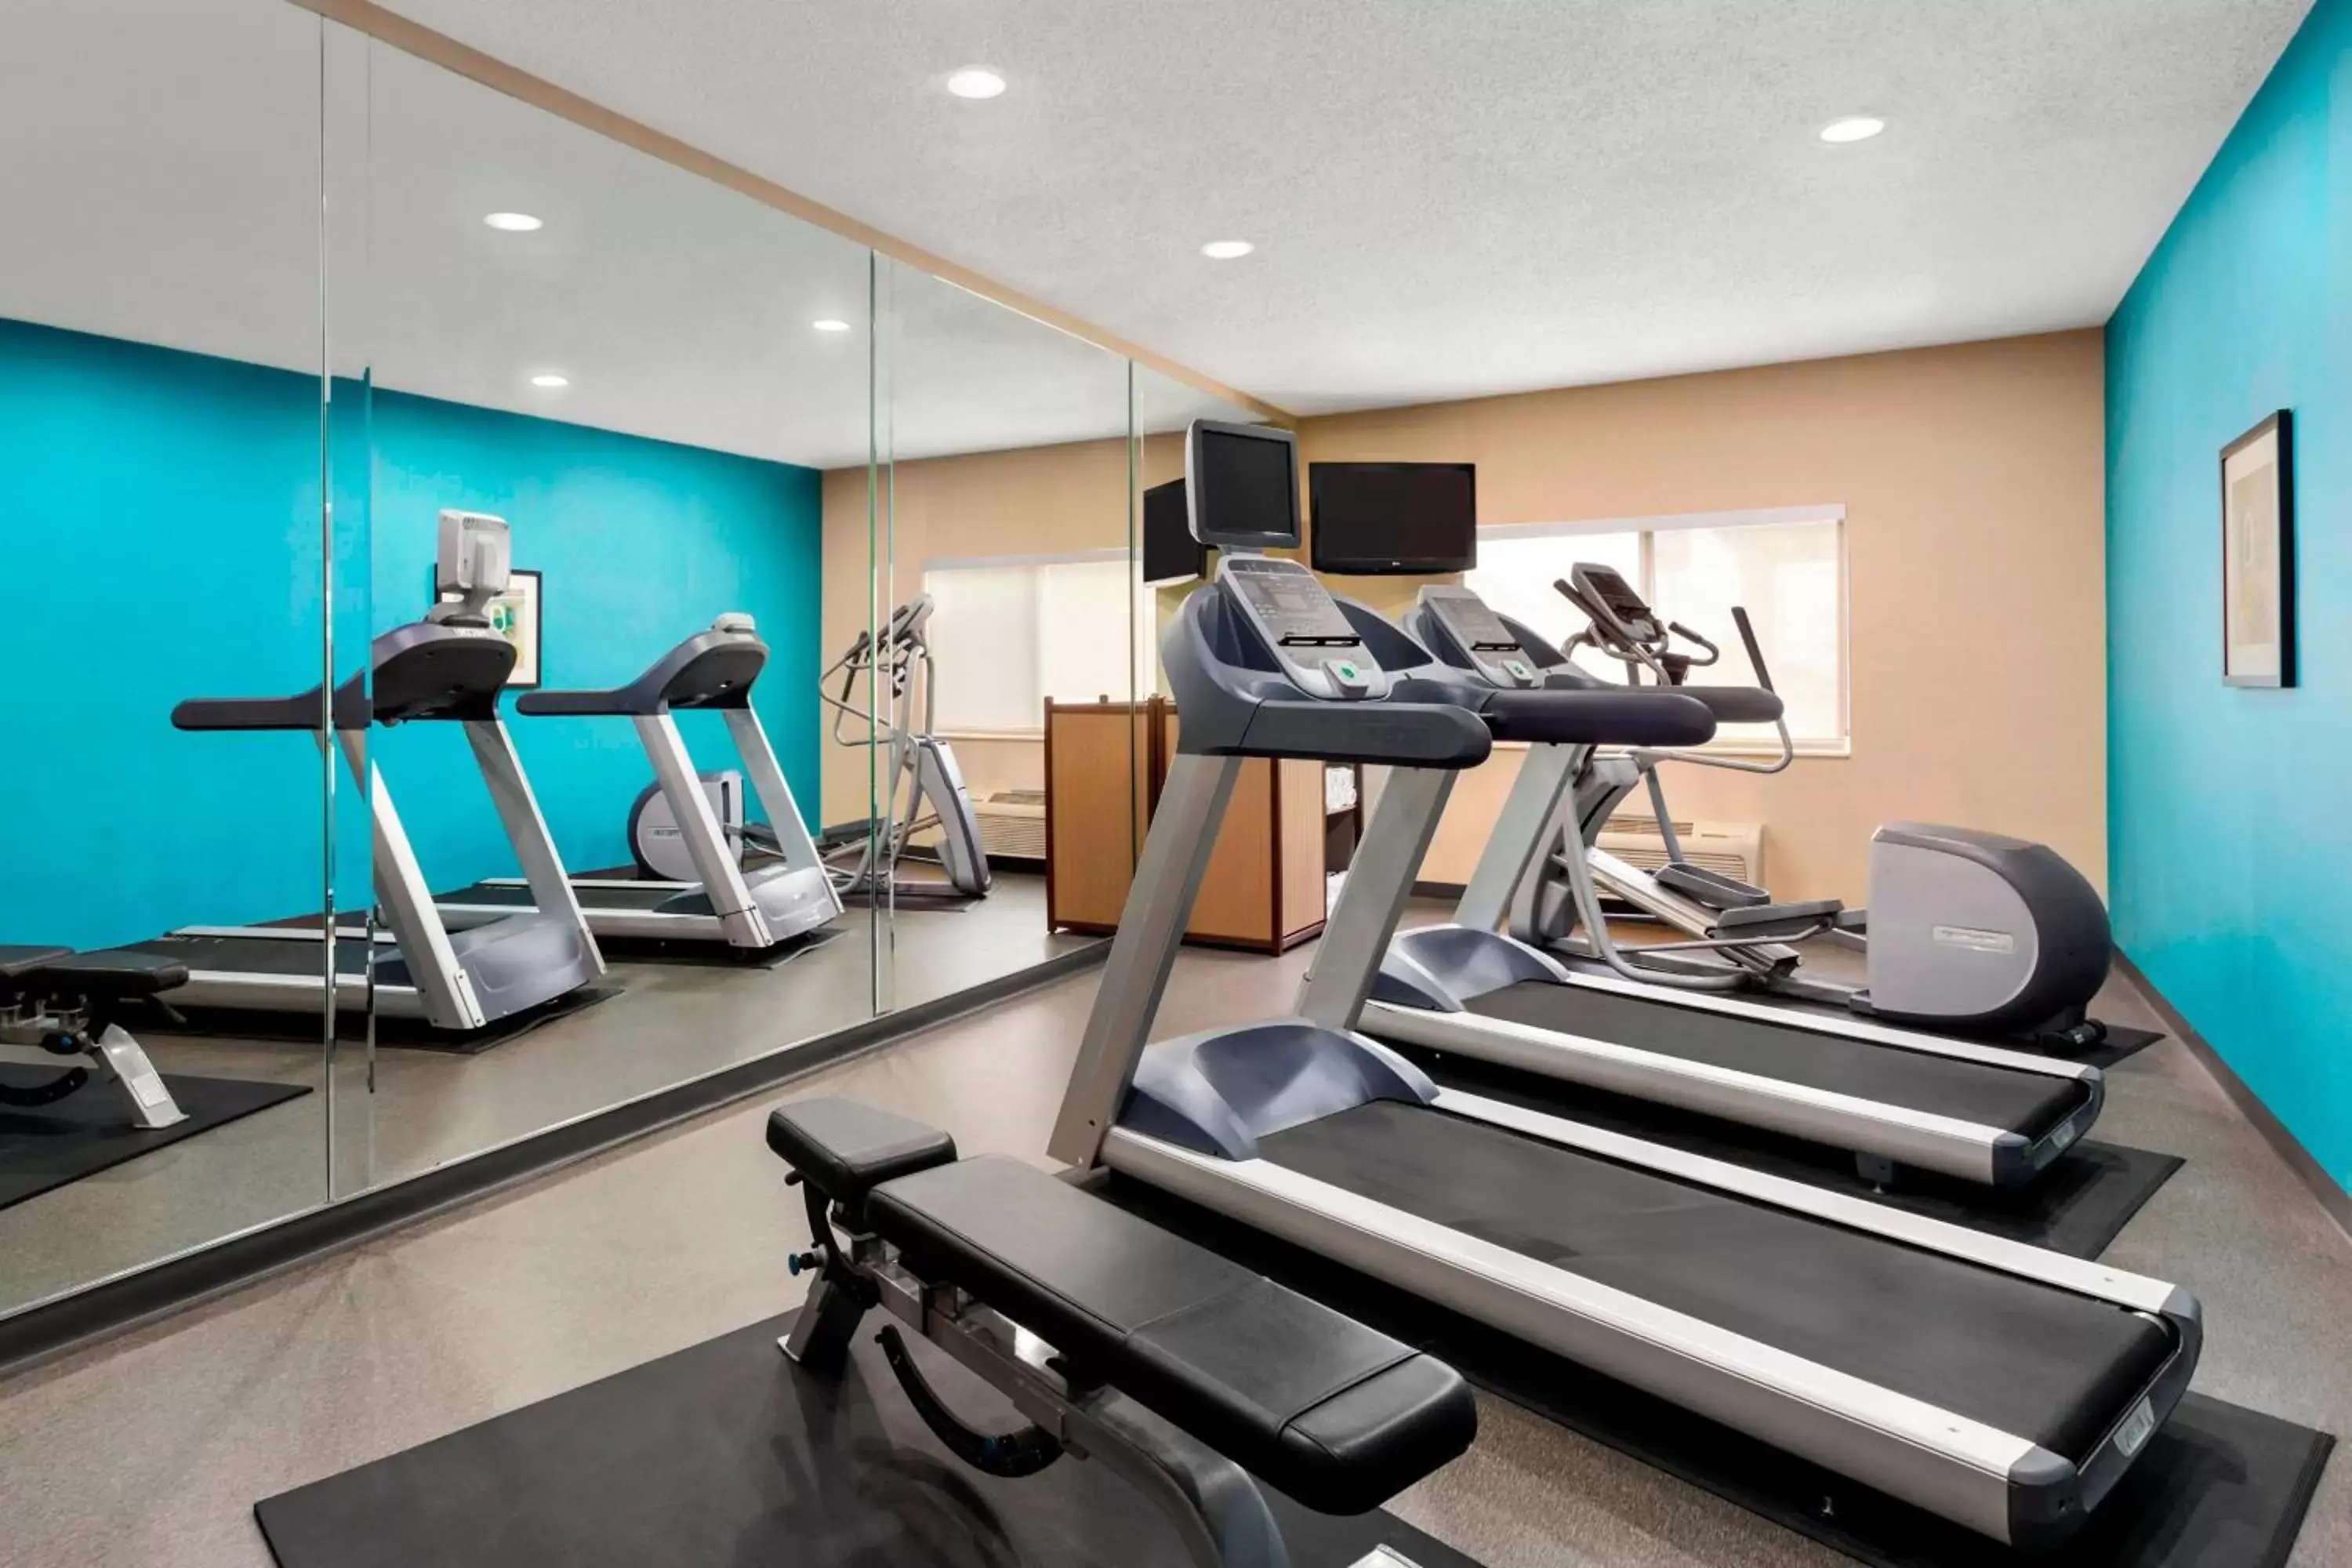 Fitness centre/facilities, Fitness Center/Facilities in Fairfield Inn & Suites Oklahoma City Quail Springs/South Edmond